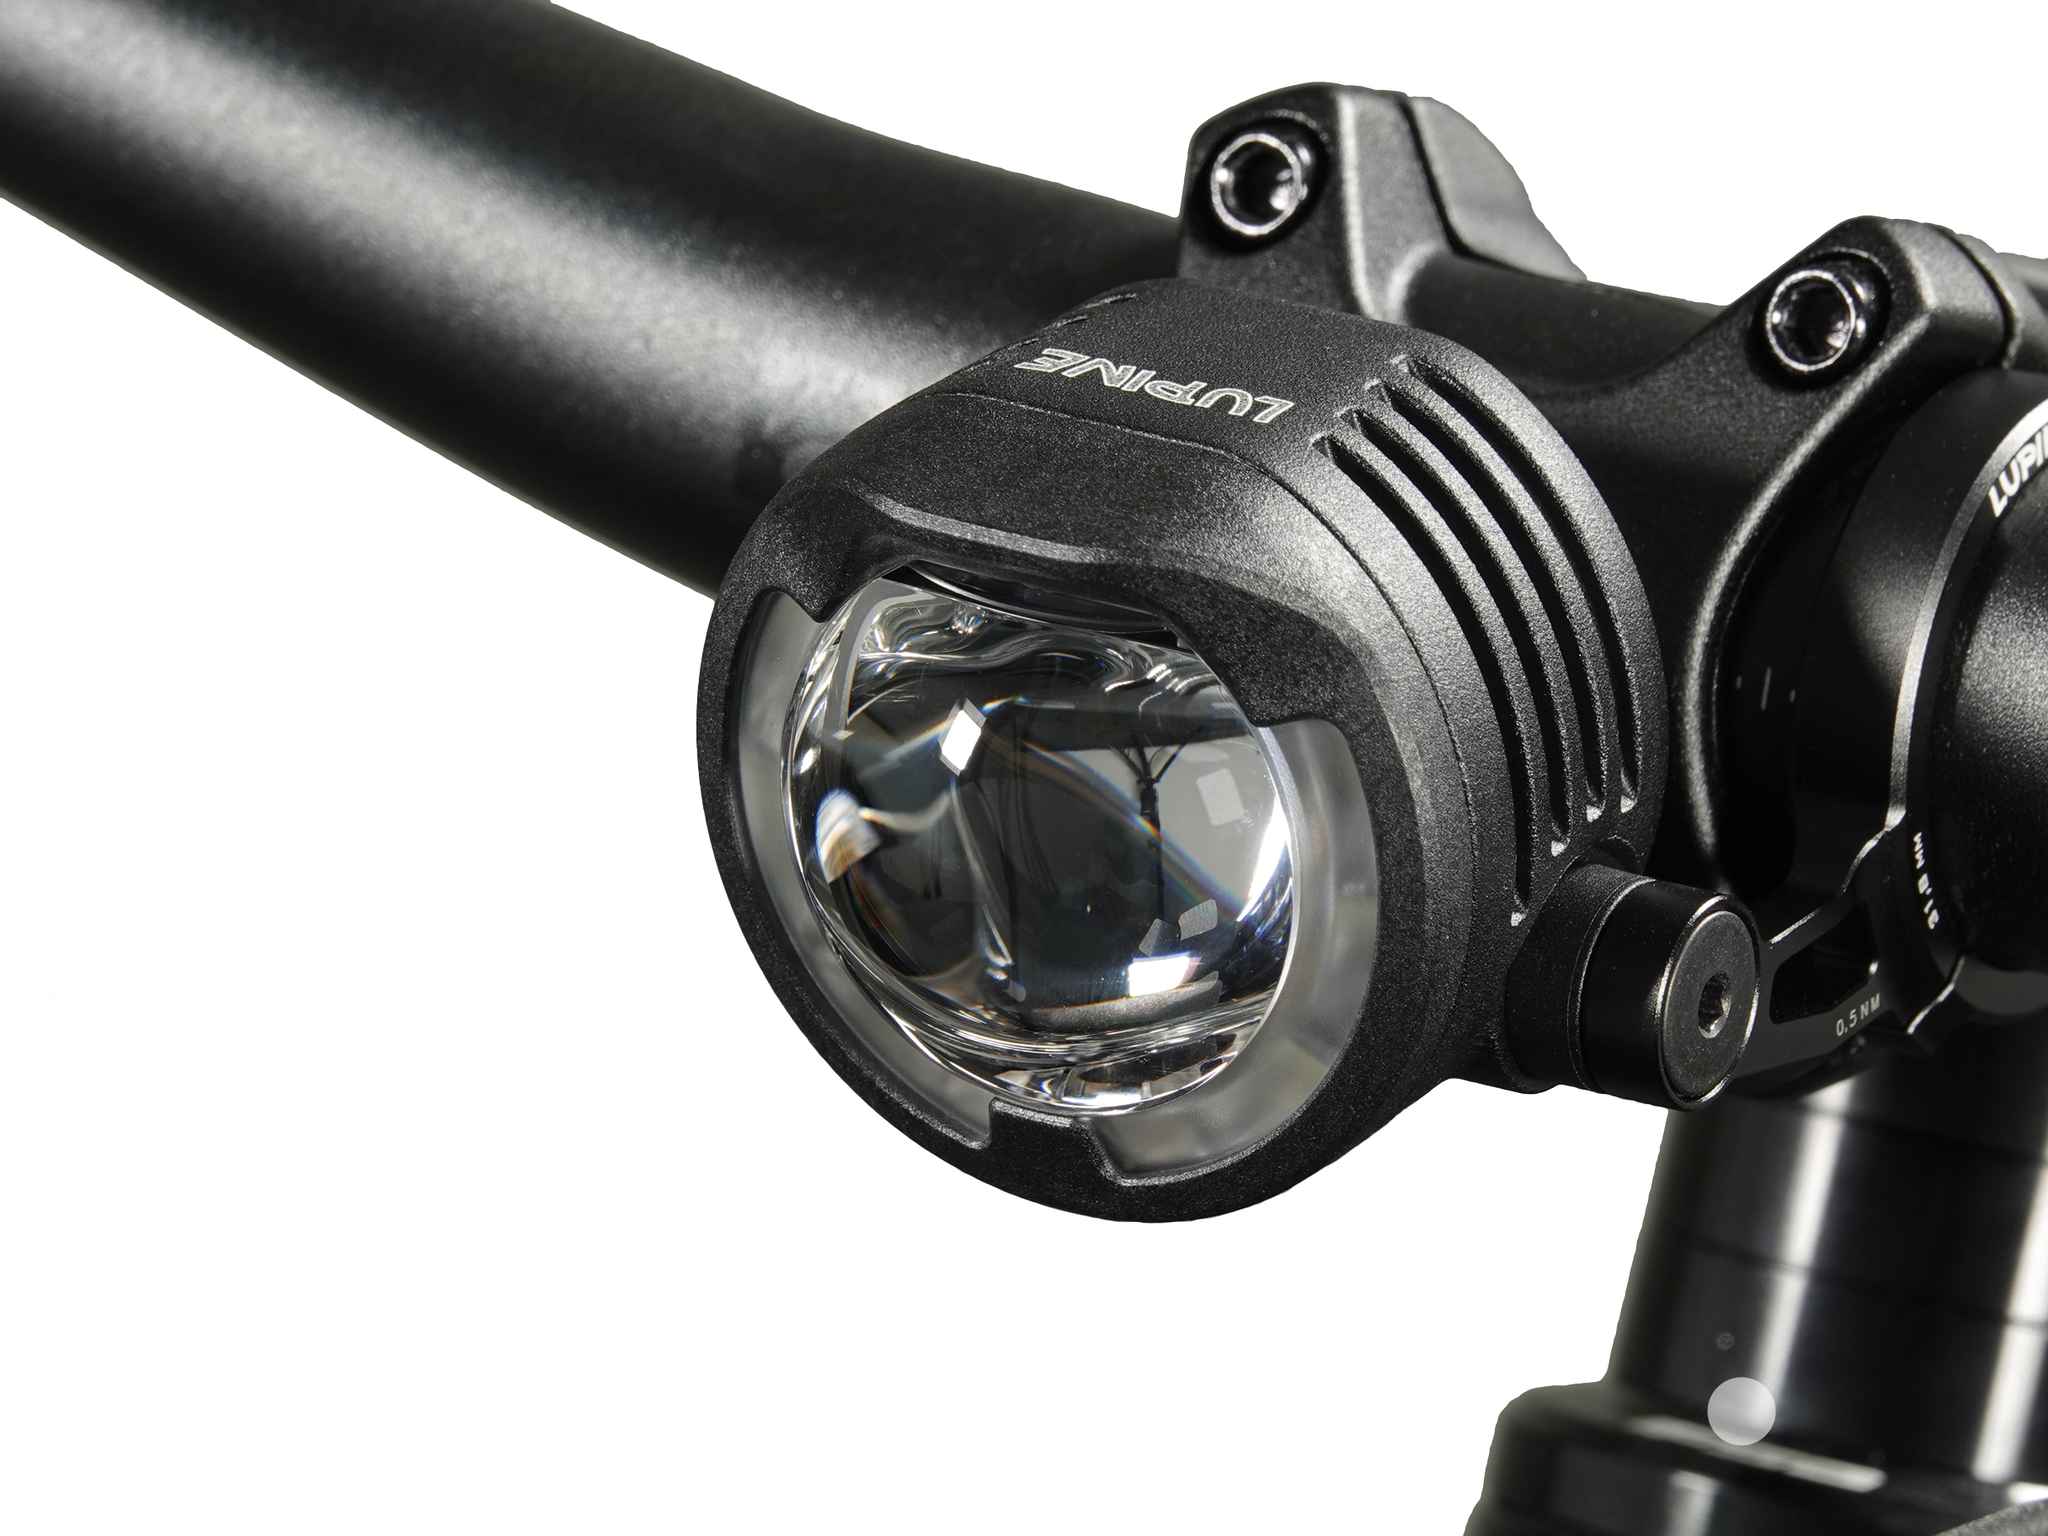 SL F BOSCH Purion/Kiox LED-Scheinwerfer mit Auf-/Abblendlicht